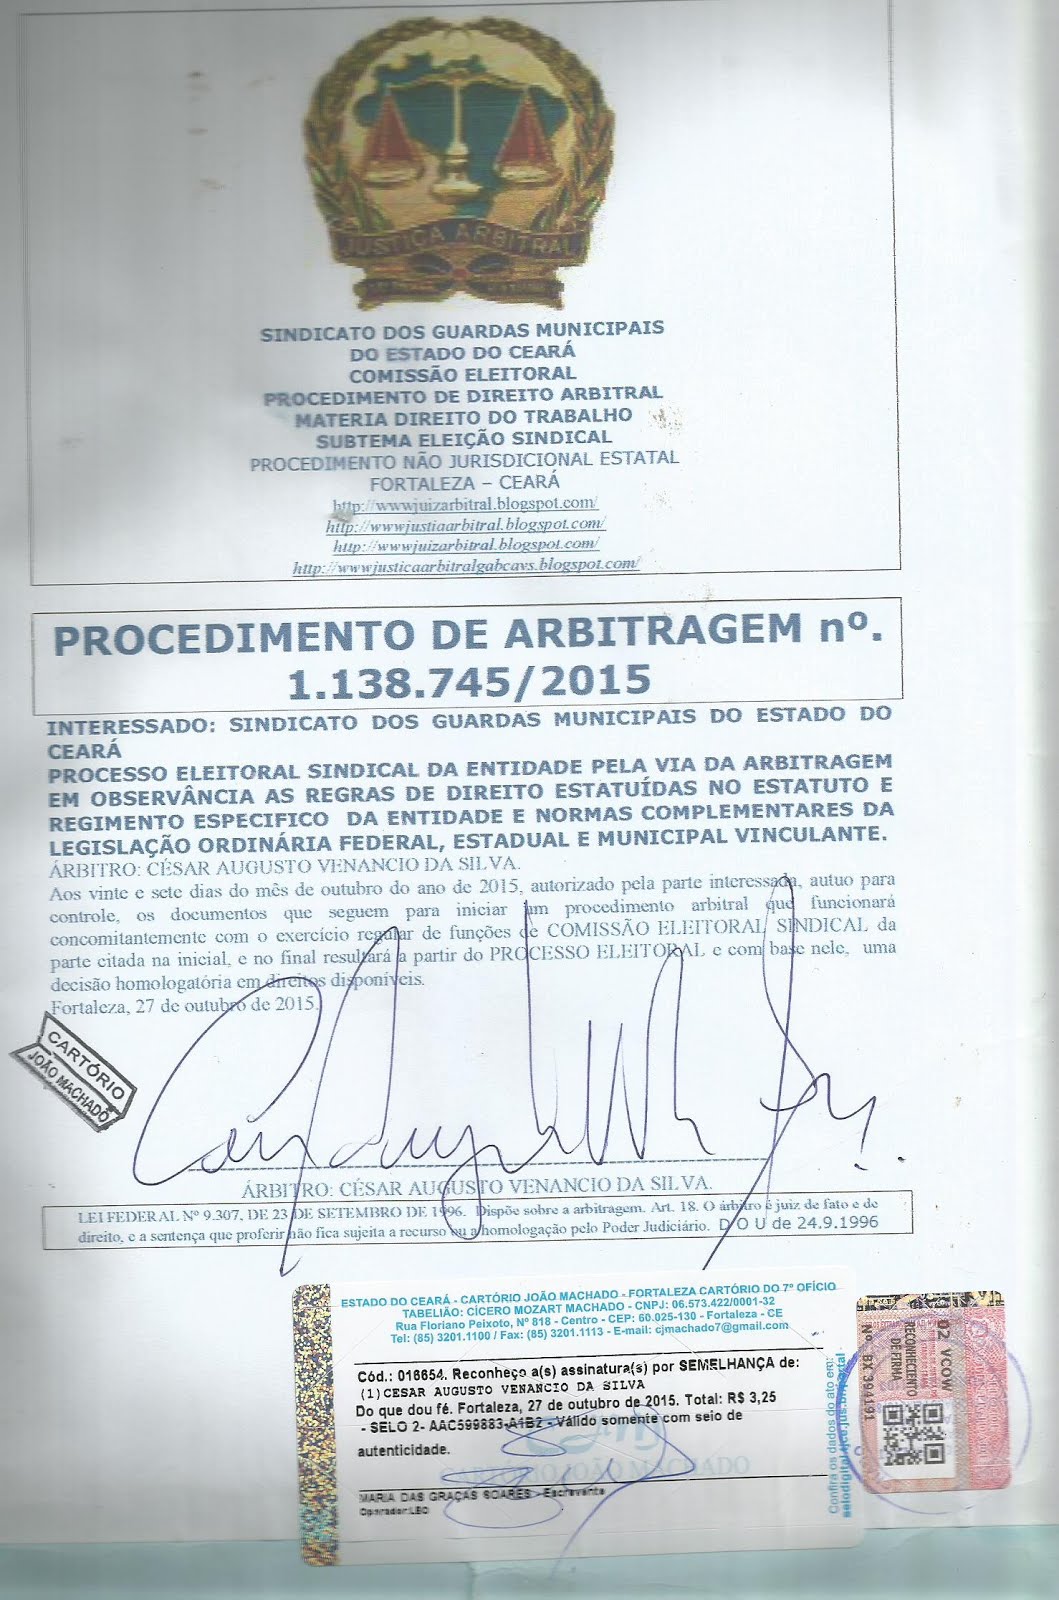 CAPA DO PROCEDIMENTO DE ARBITRAGEM 1.138.745.2015